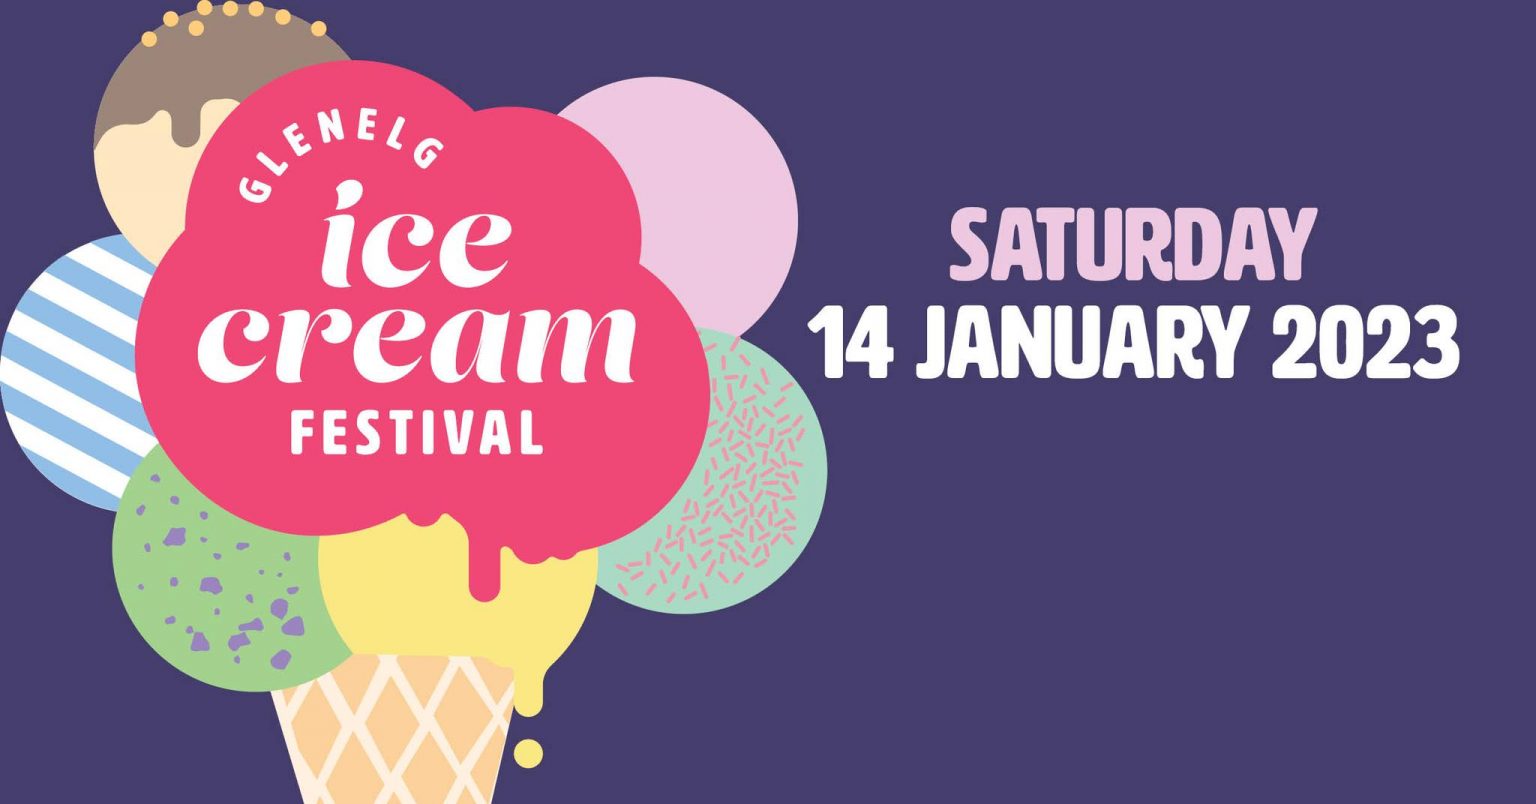 Glenelg Ice Cream Festival 14 Jan 2023 Play & Go AdelaidePlay & Go